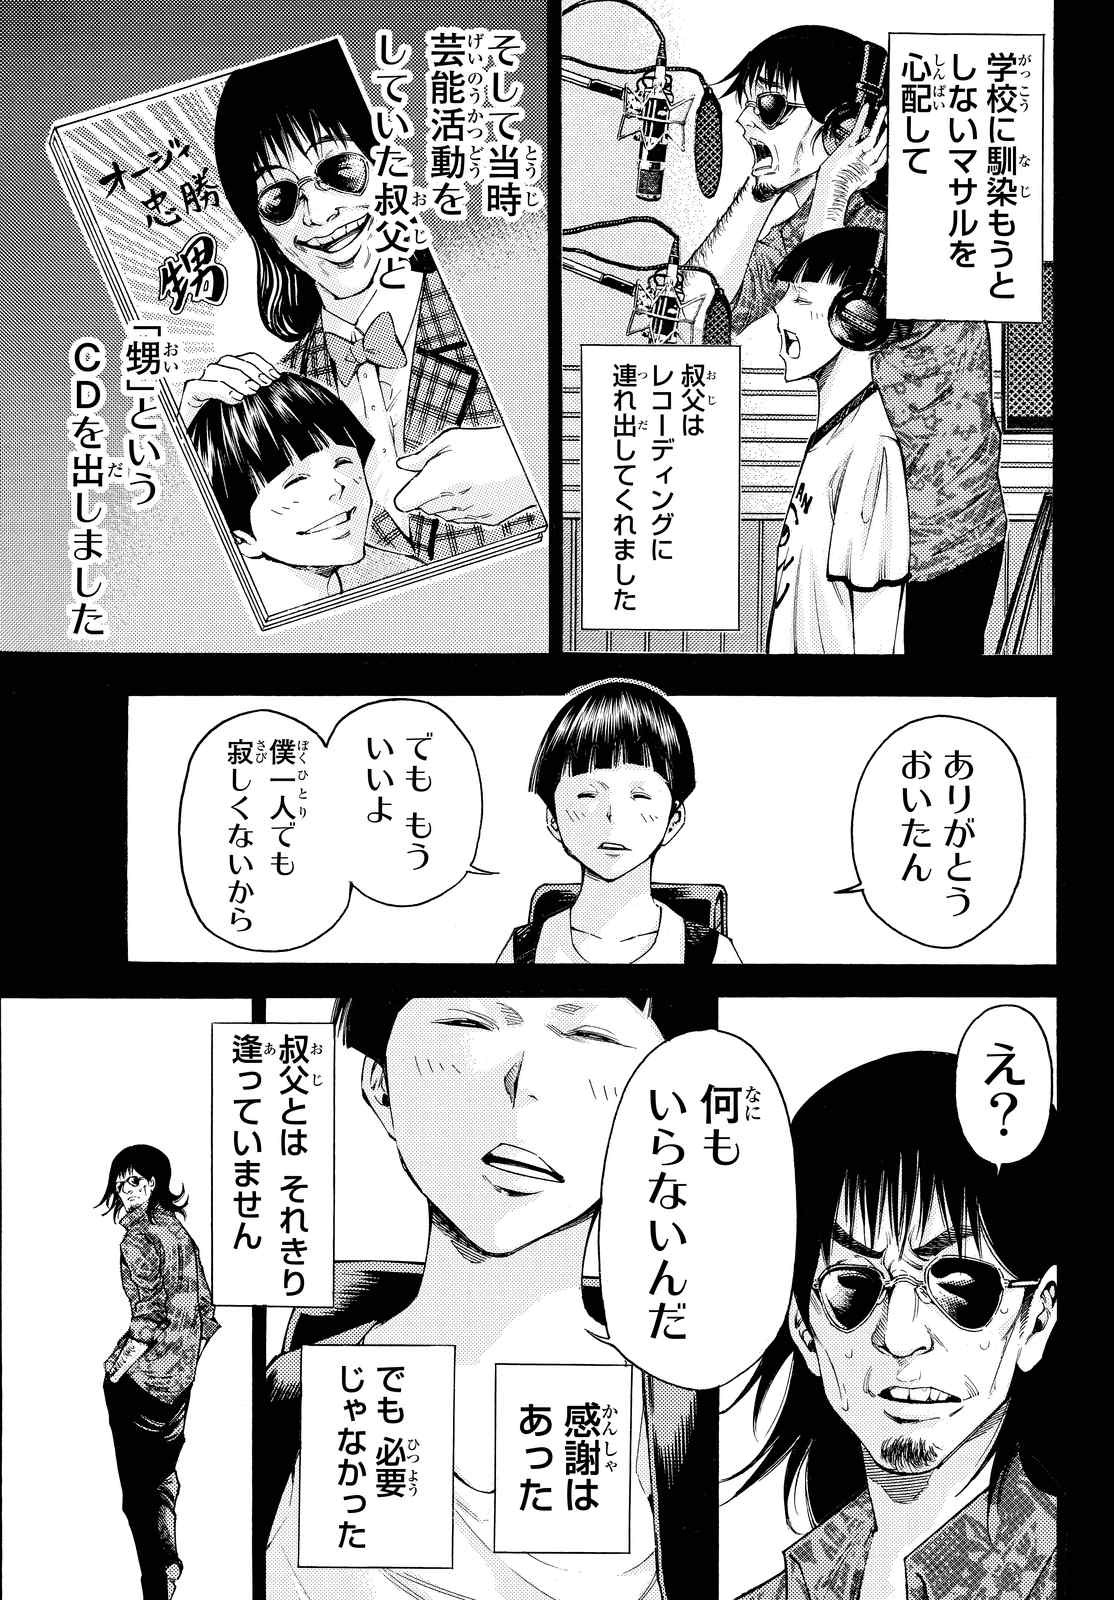 Kamisama no Ituori - Chapter 155 - Page 5